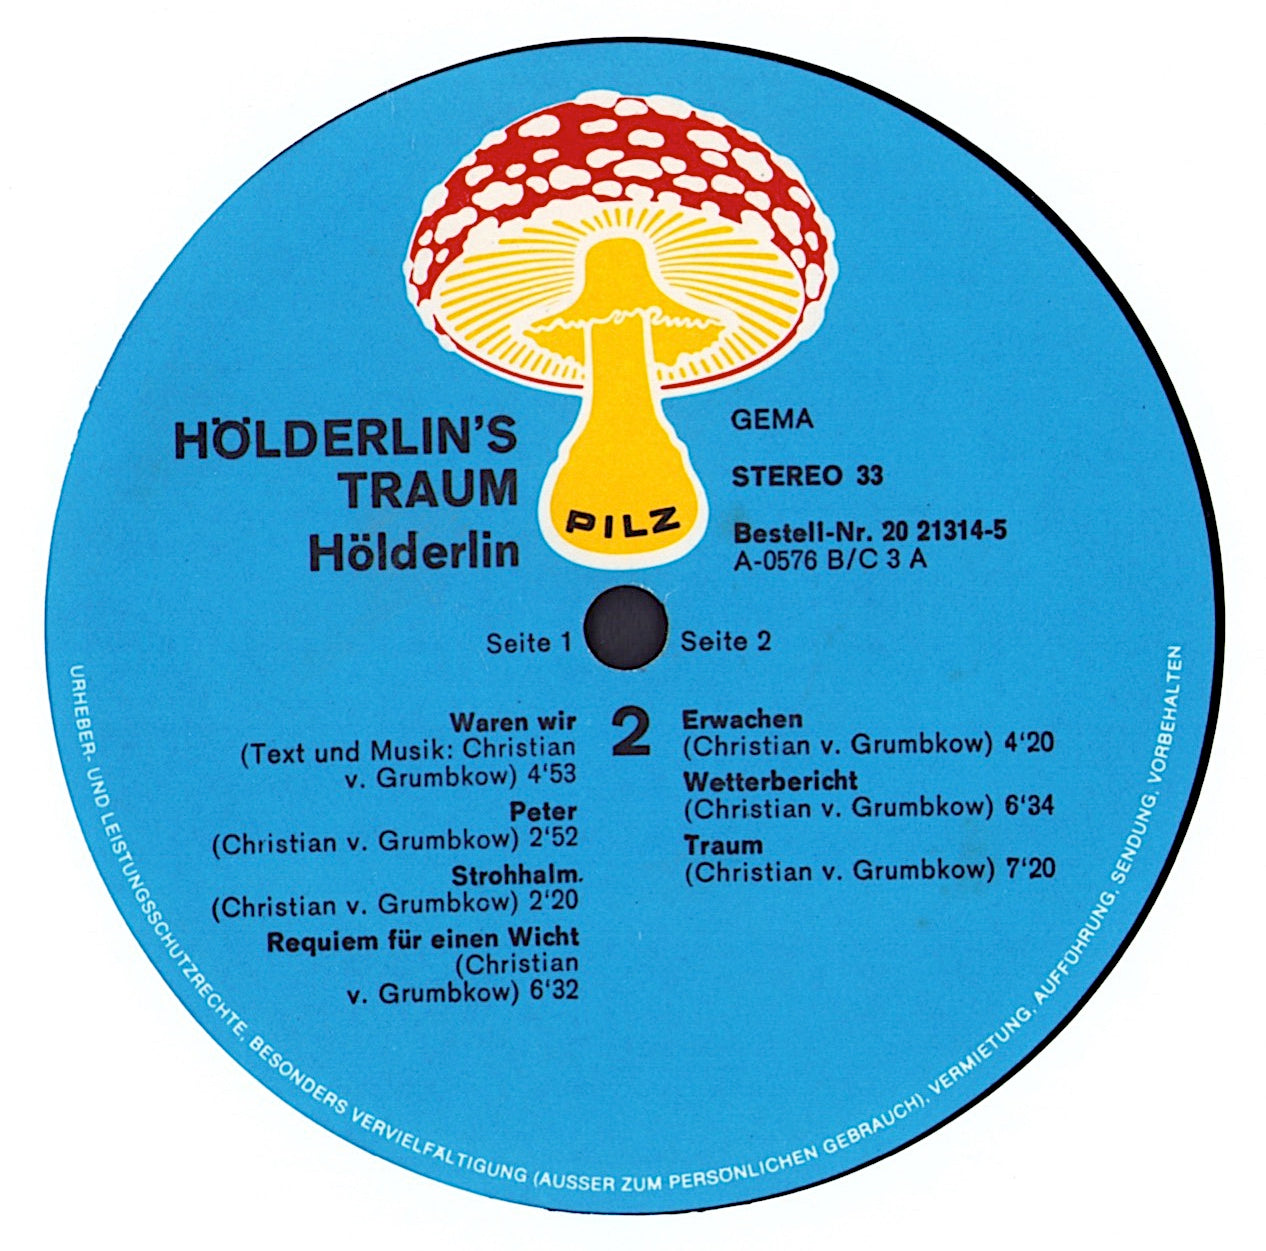 Hölderlin - Hölderlins Traum Vinyl LP